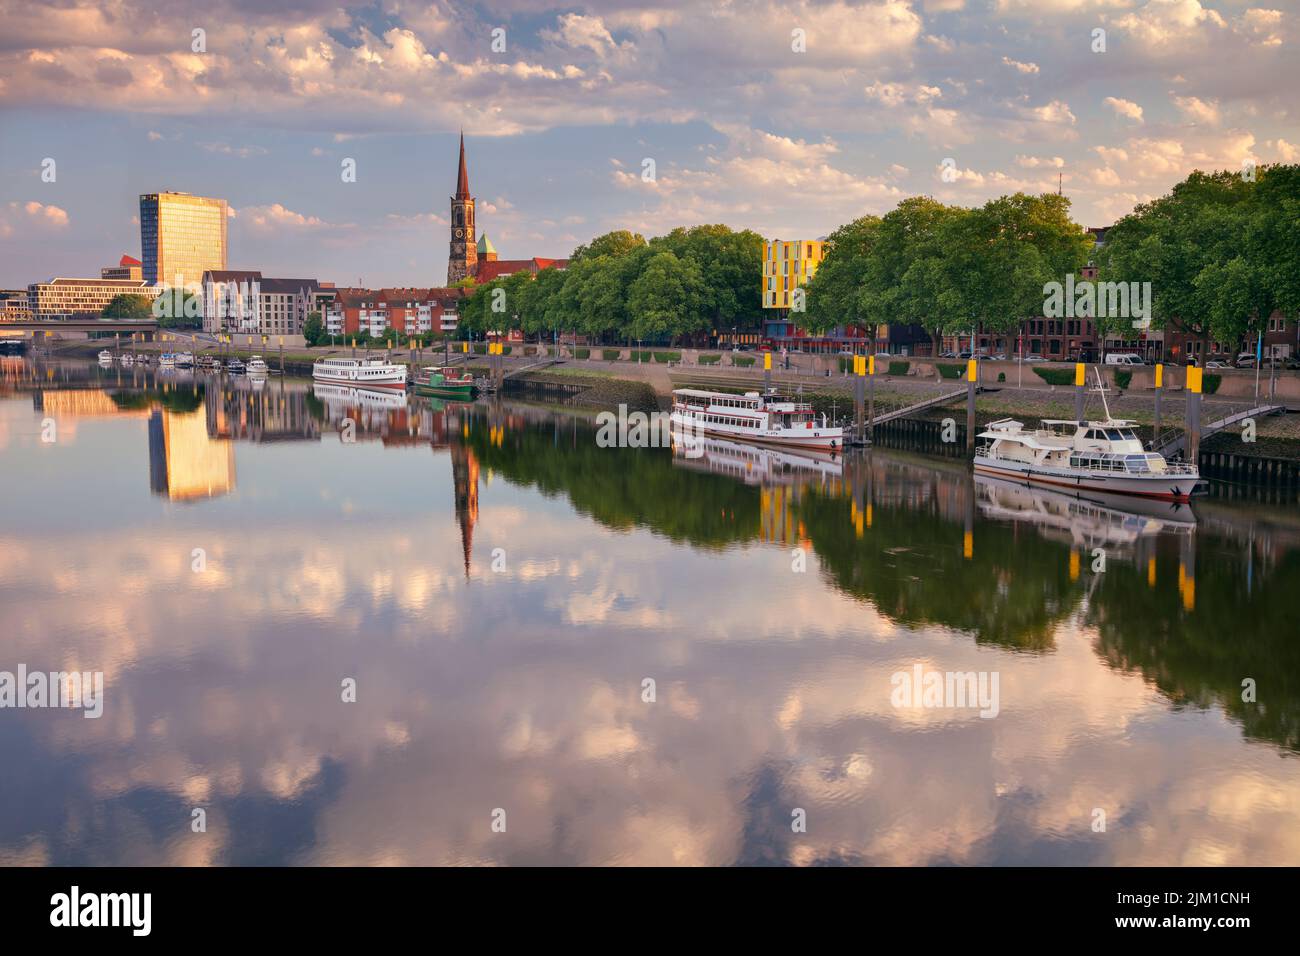 Brême, Allemagne. Image de paysage urbain du bord de la rivière Bremen, en Allemagne, avec reflet de l'église Saint-Stephani dans la rivière Weser au lever du soleil d'été. Banque D'Images